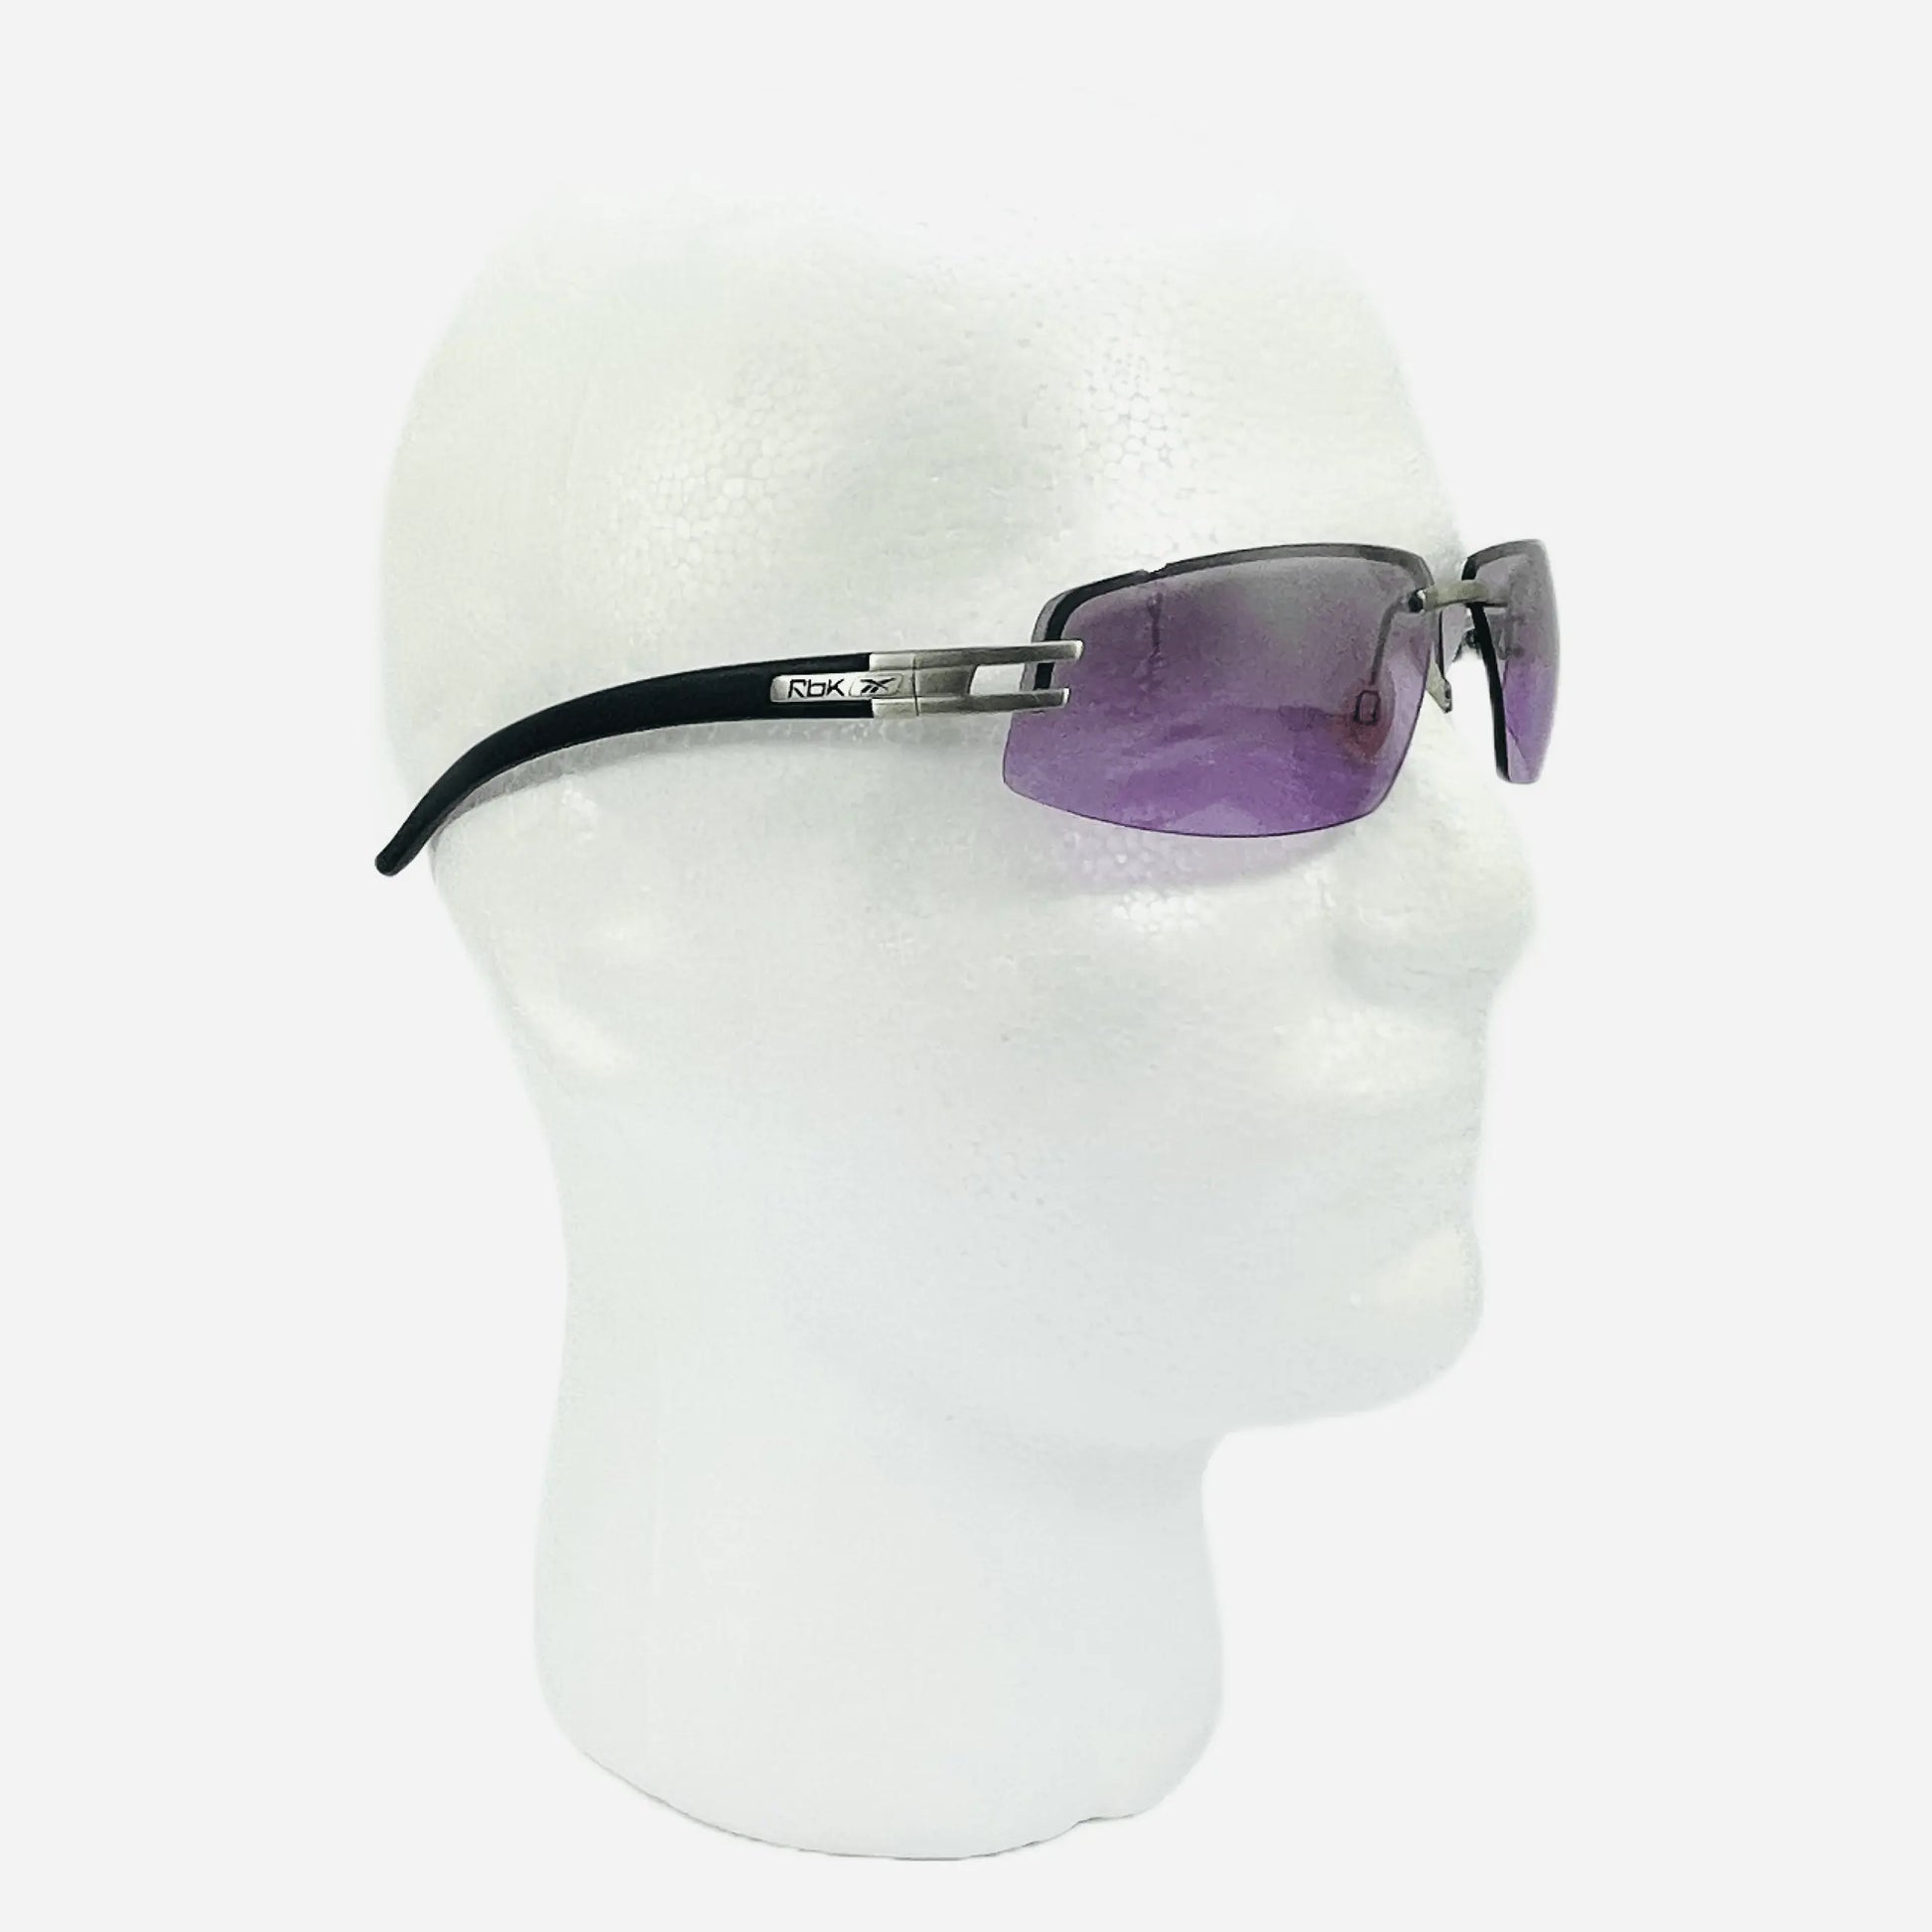 Vintage-Rebook-Sonnenbrille-Sunglasses-Schnelle-Brille-90s-head